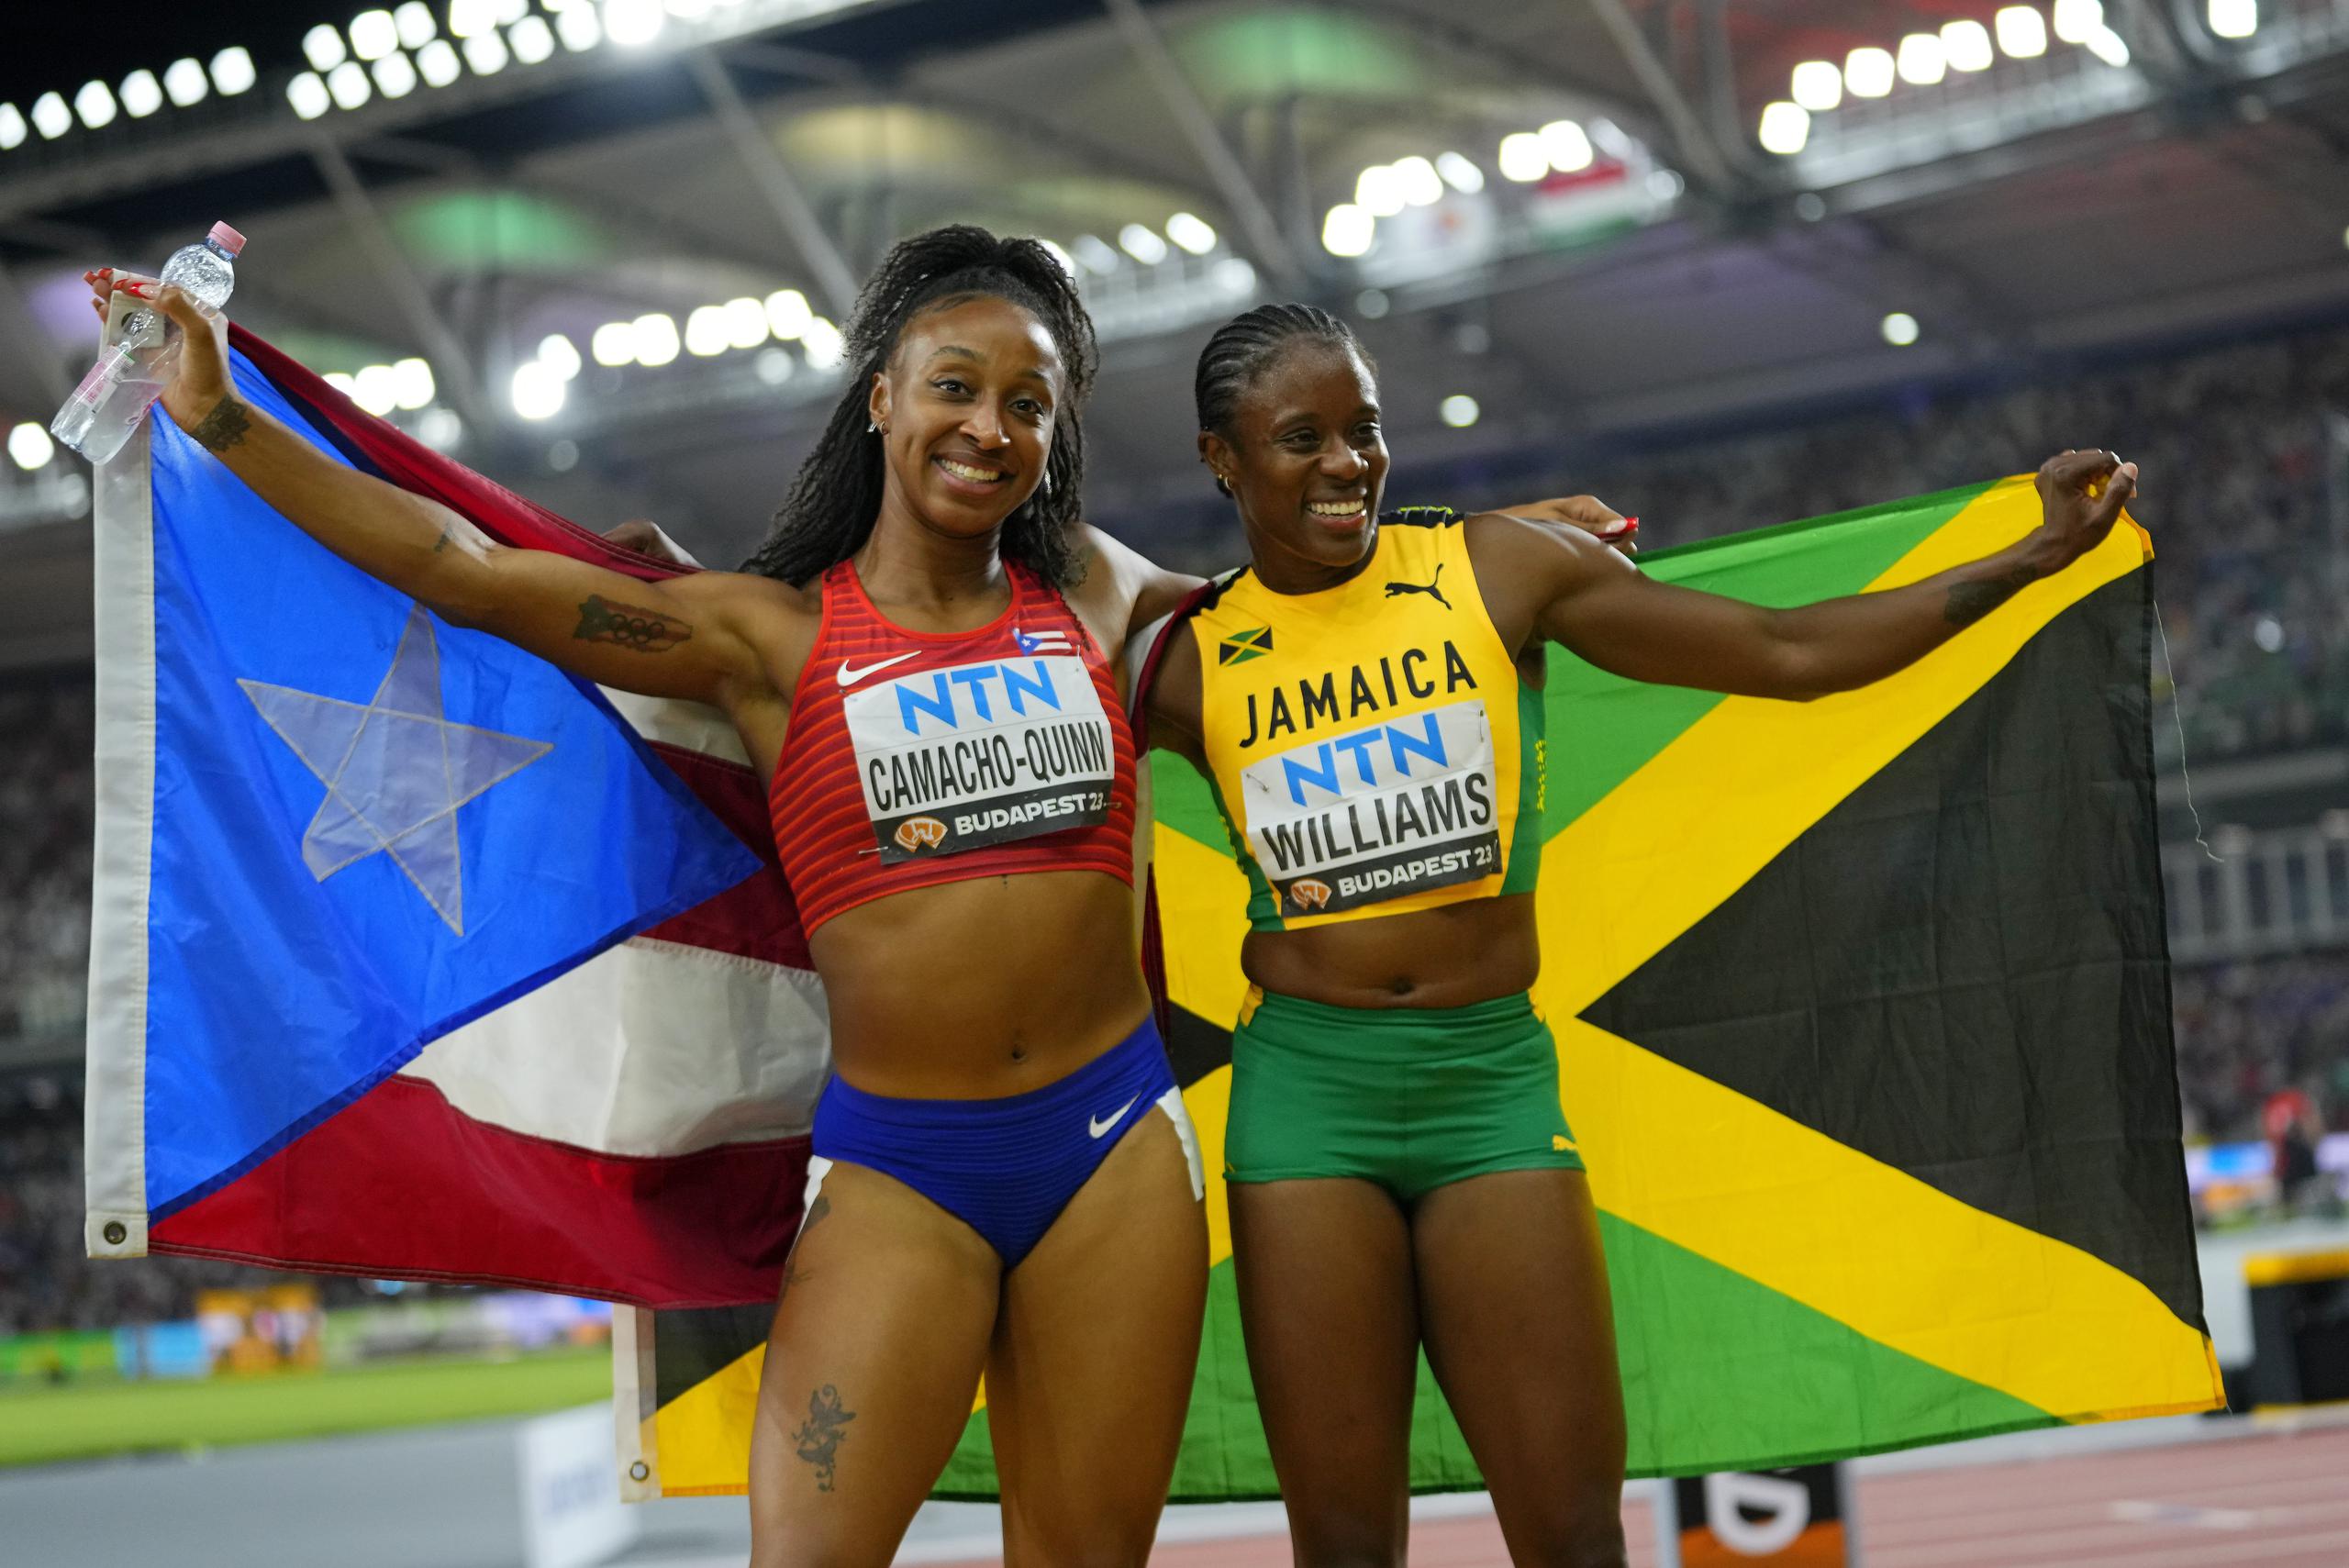 Jasmine Camacho Quinn y Danielle Williams, plata y oro en la final de los 100 metros con vallas, posan tras la carrera mostrando las banderas de sus respectivos países, Puerto Rico y Jamaica.